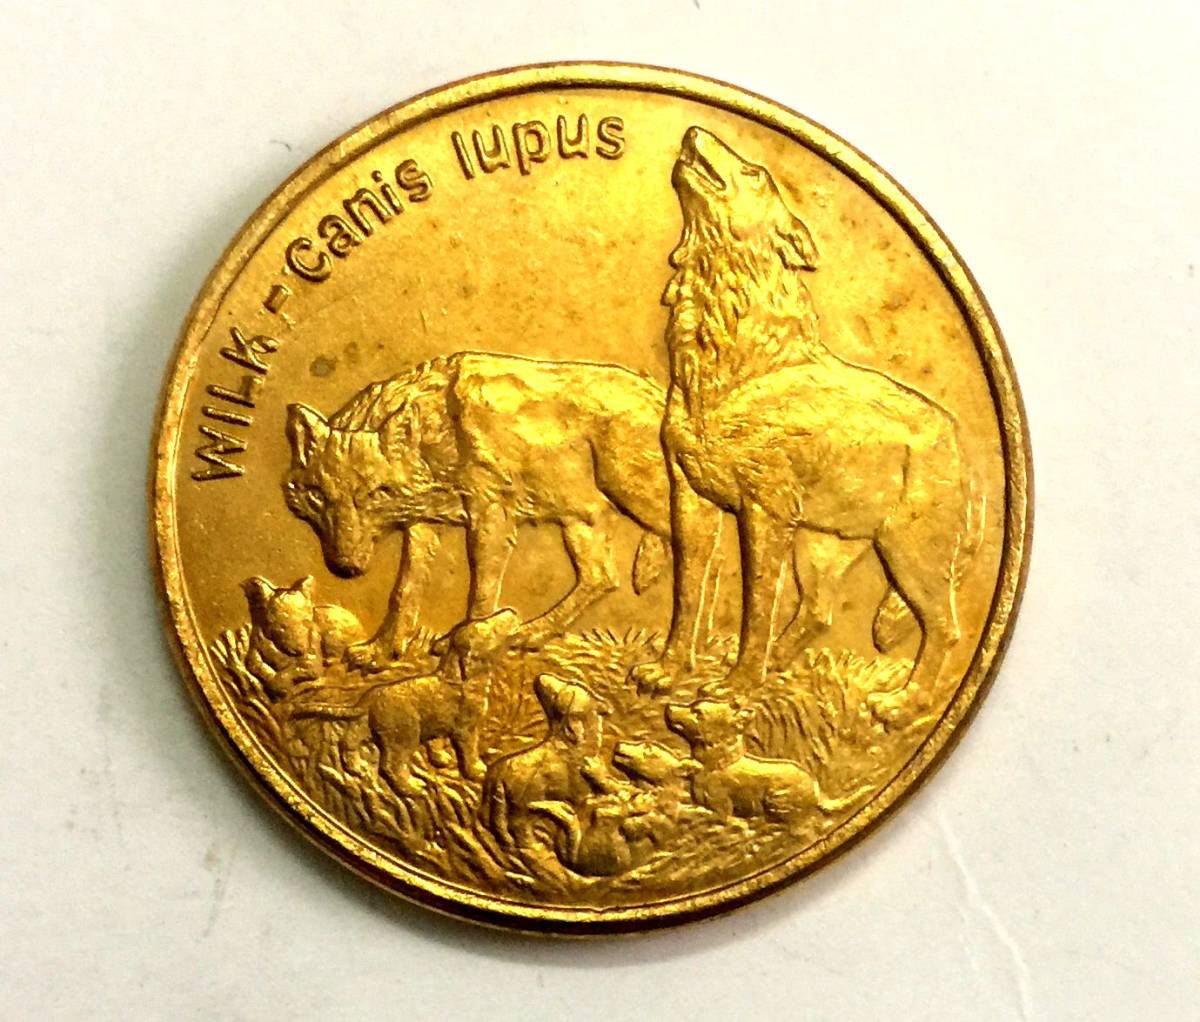  原文:ポーランド 金貨 1999 2大型金貨 激稀少!!! 直径27mm 重さ8.9g